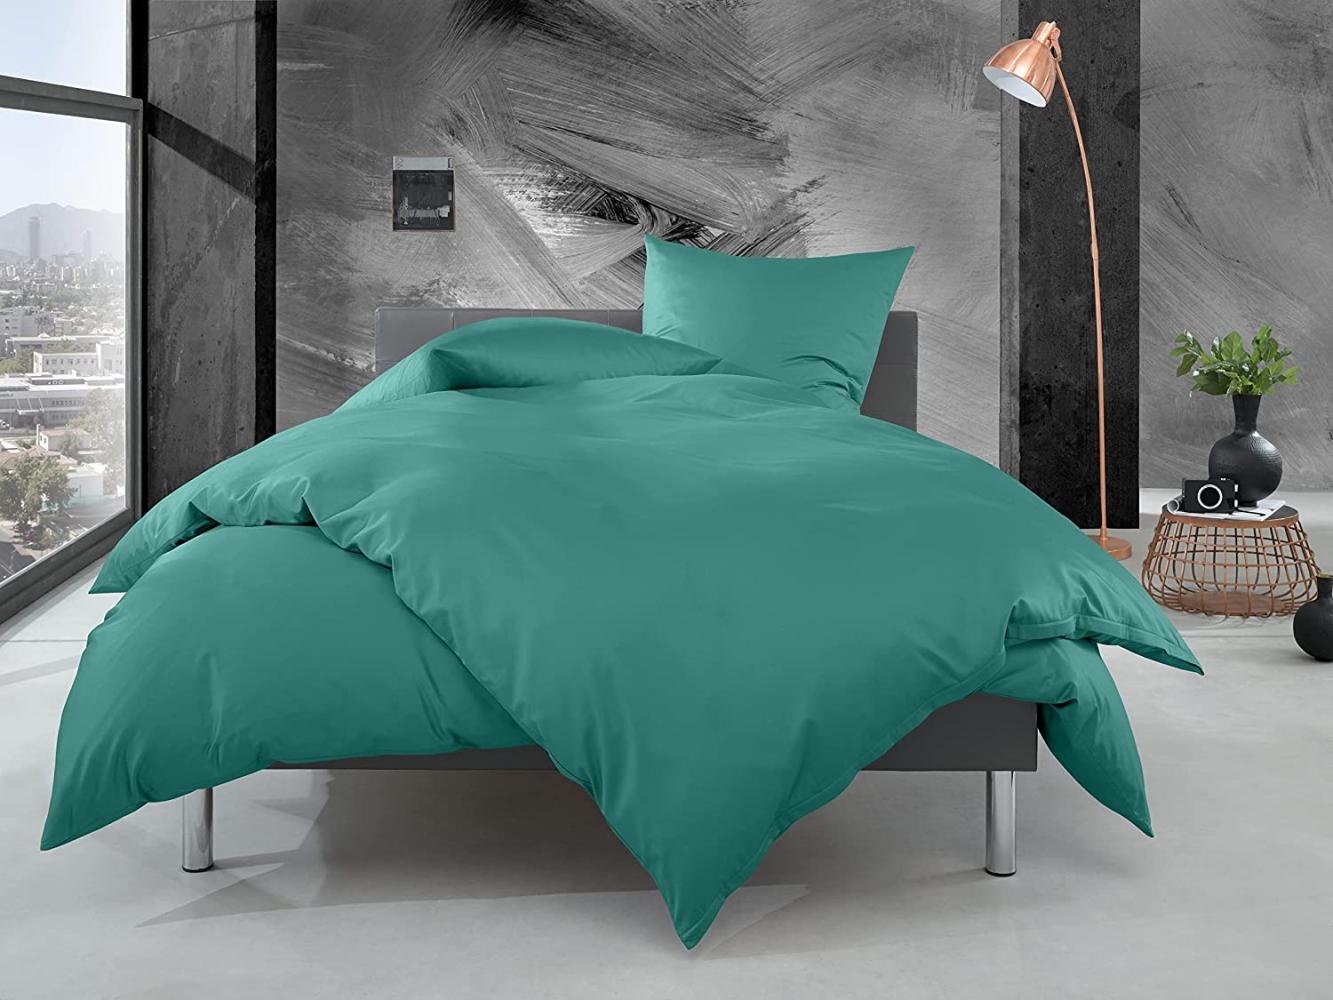 Bettwaesche-mit-Stil Mako Perkal Bettwäsche uni / einfarbig petrol grün Garnitur 135x200 + 80x80 cm Bild 1